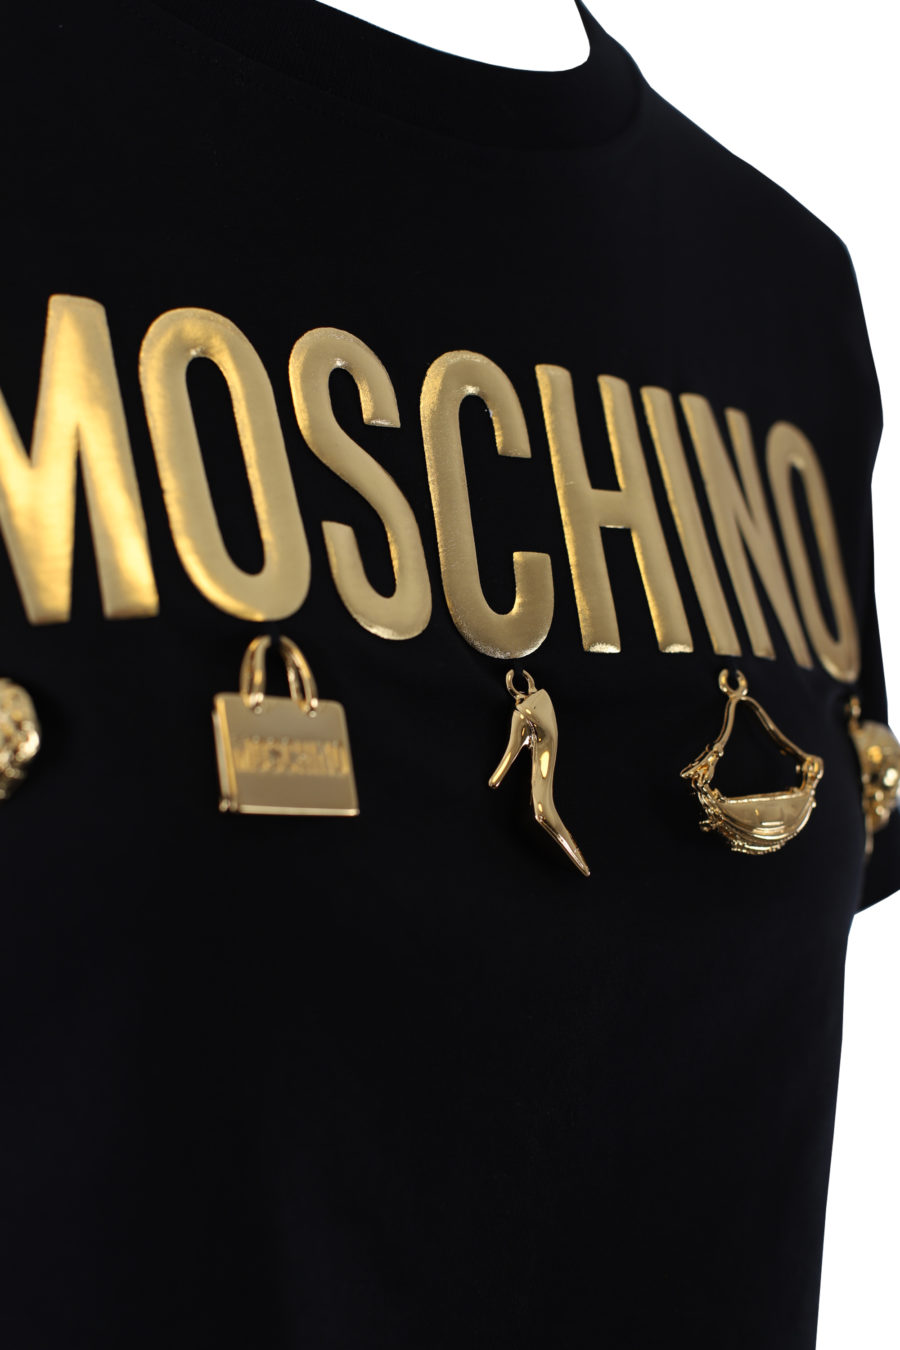 Moschino - Camiseta negra corta con logo oso en cinta blanco - BLS Fashion